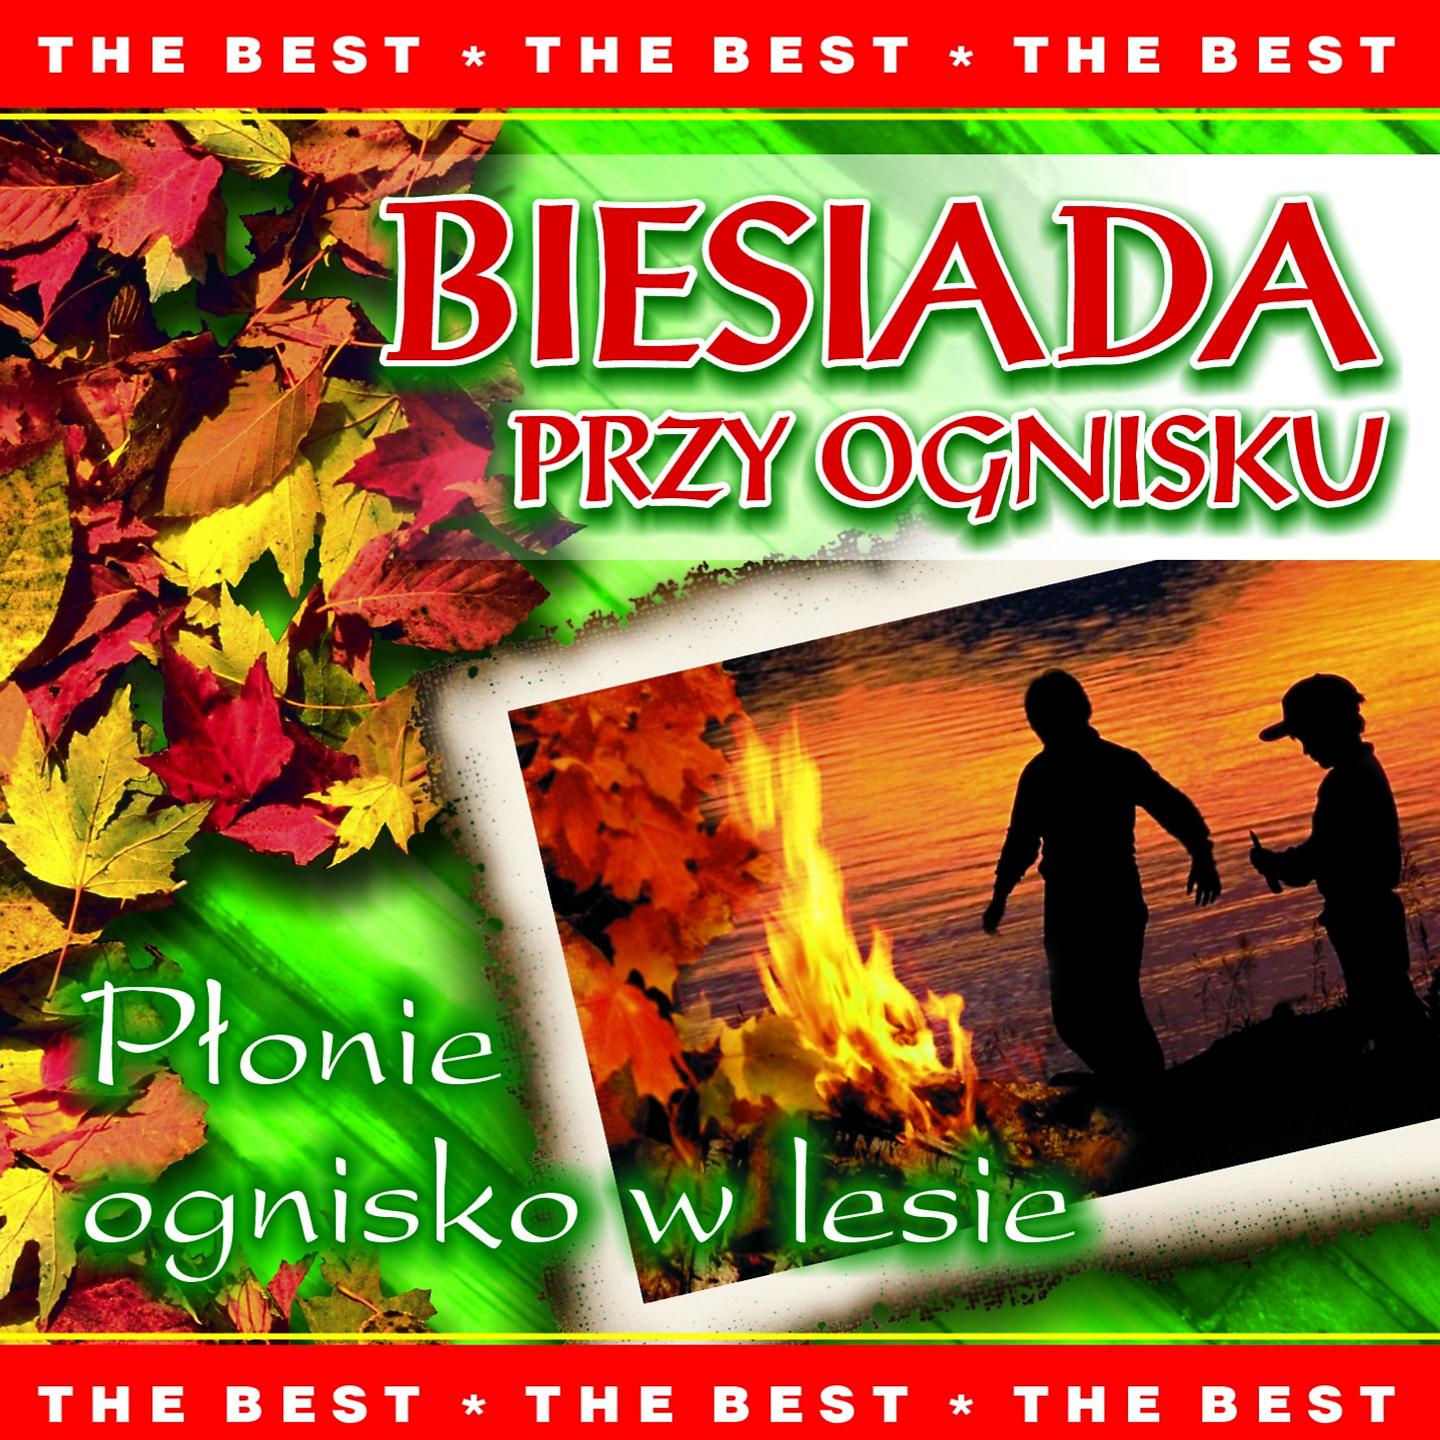 Постер альбома Biesiada przy ognisku - płonie ognisko w lesie